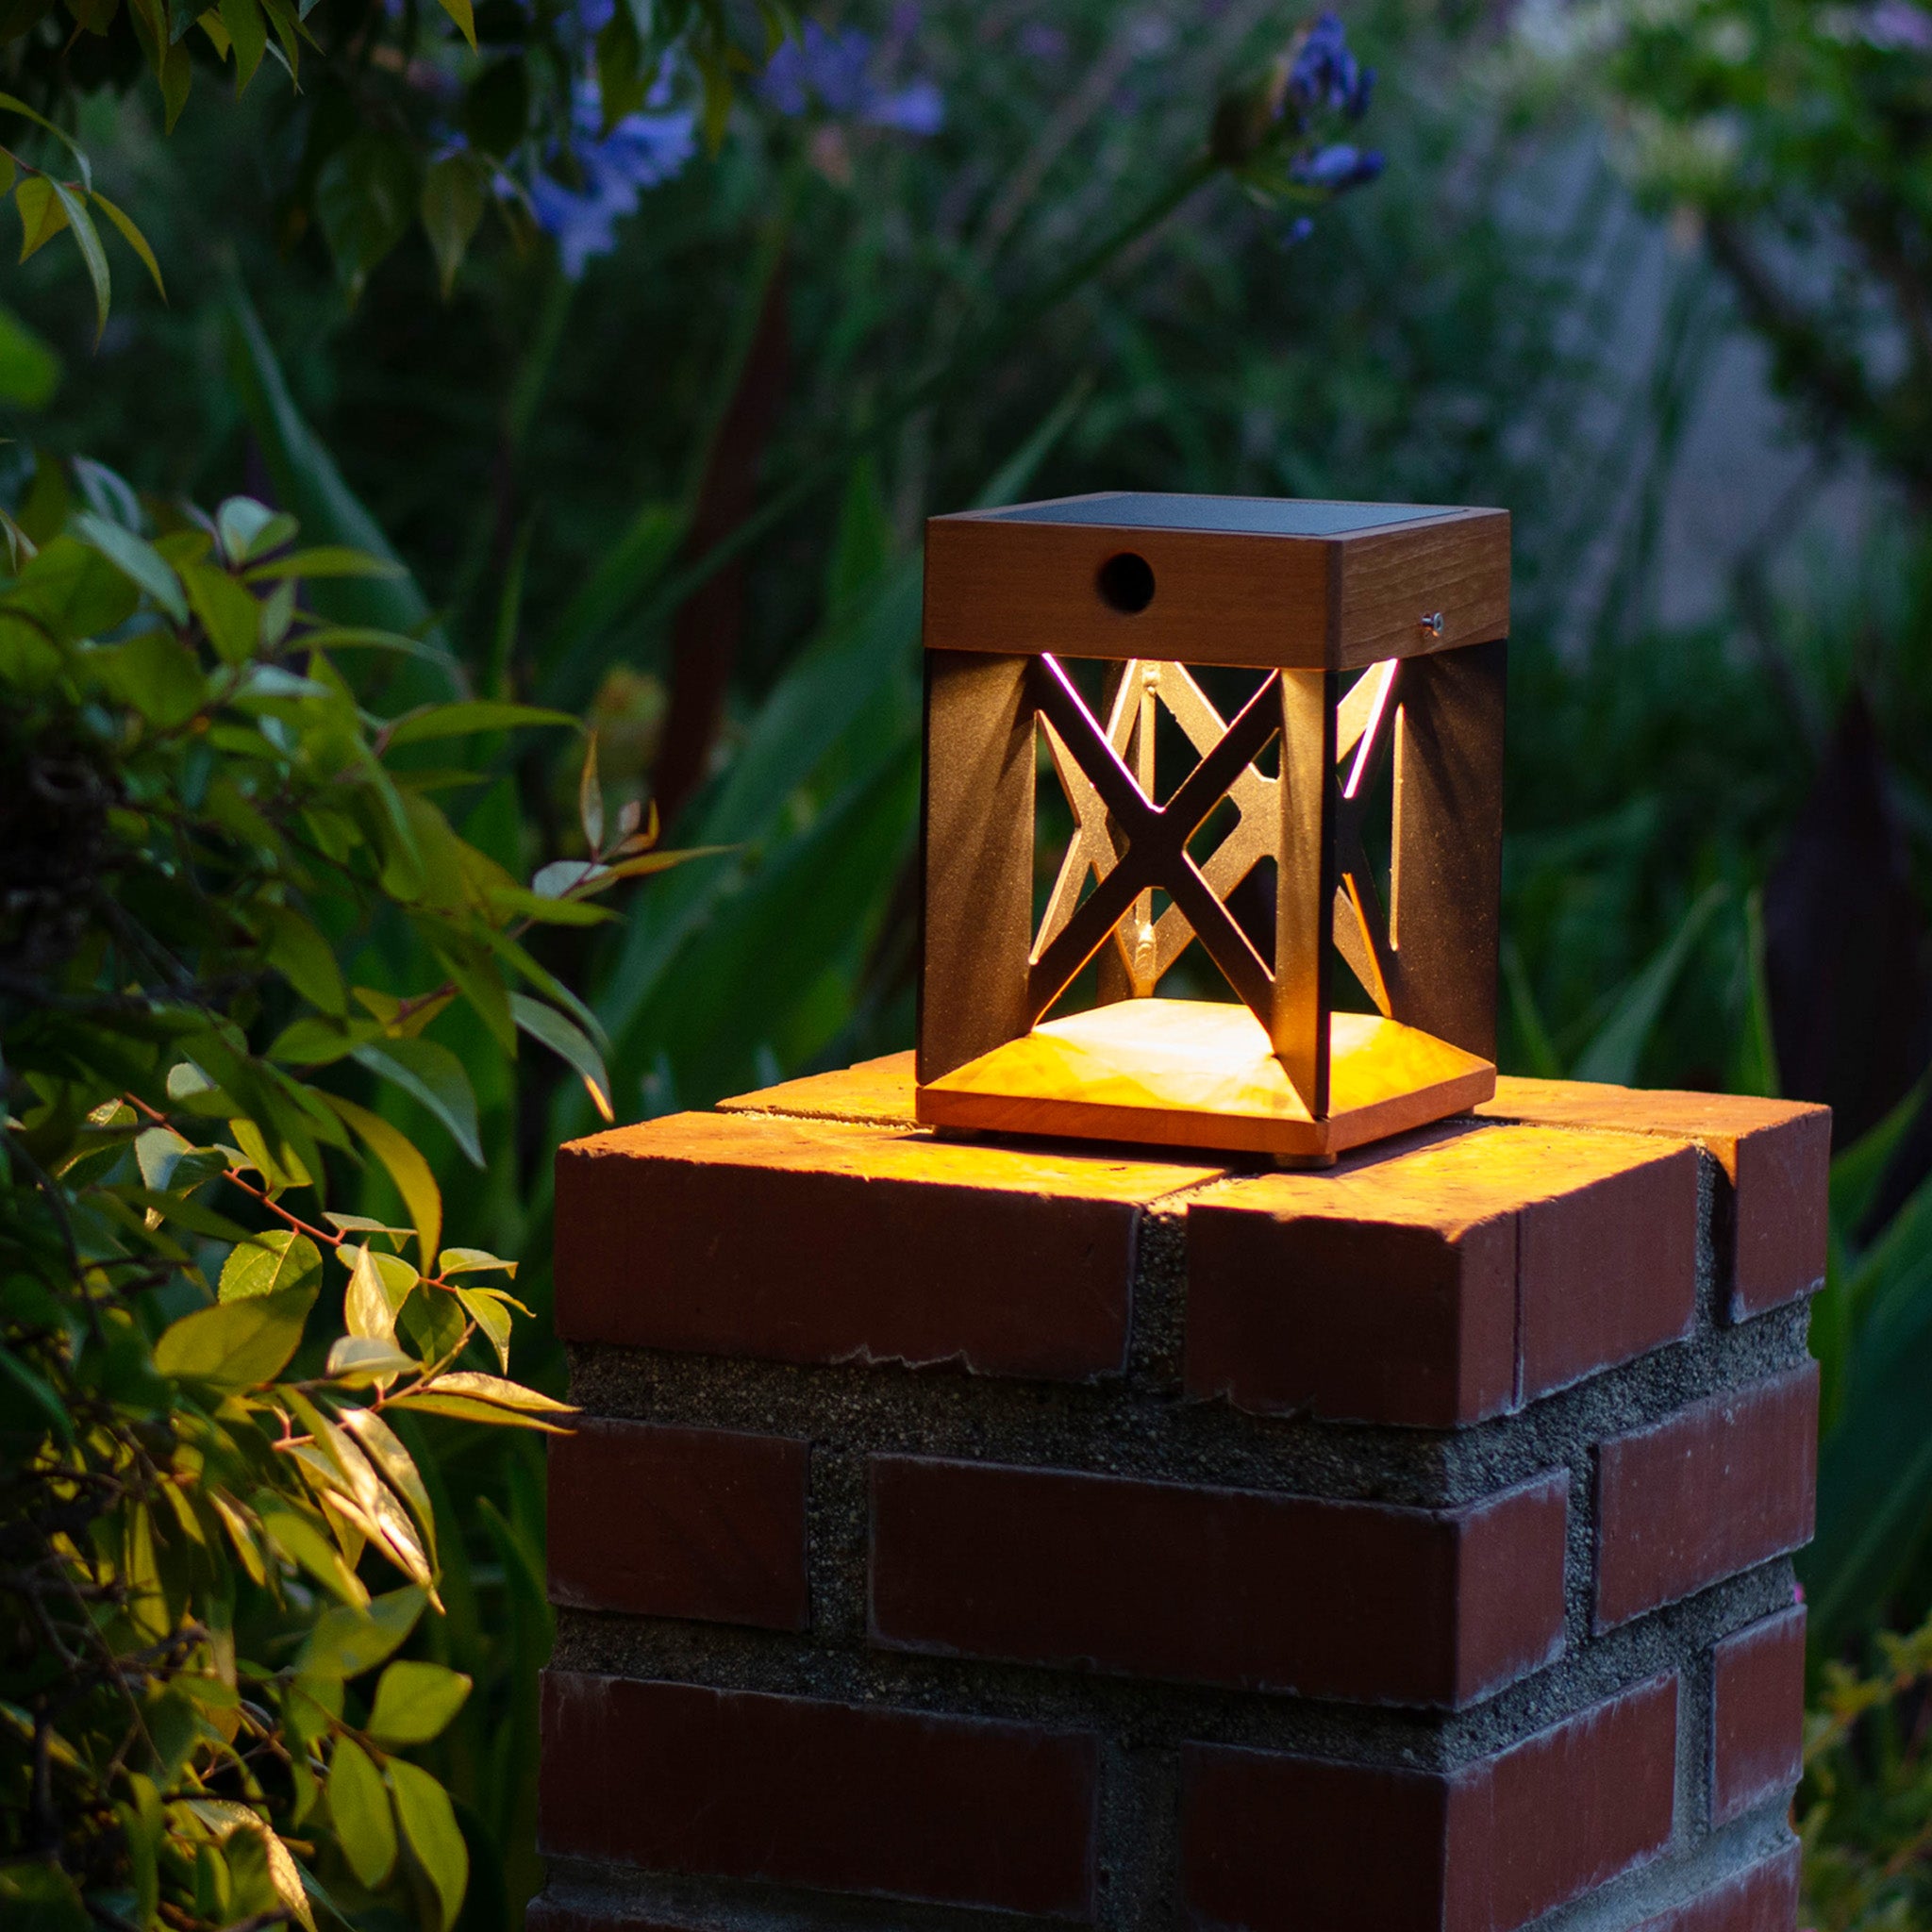 Soho table lamp with asb solar bulb illuminating outdoor